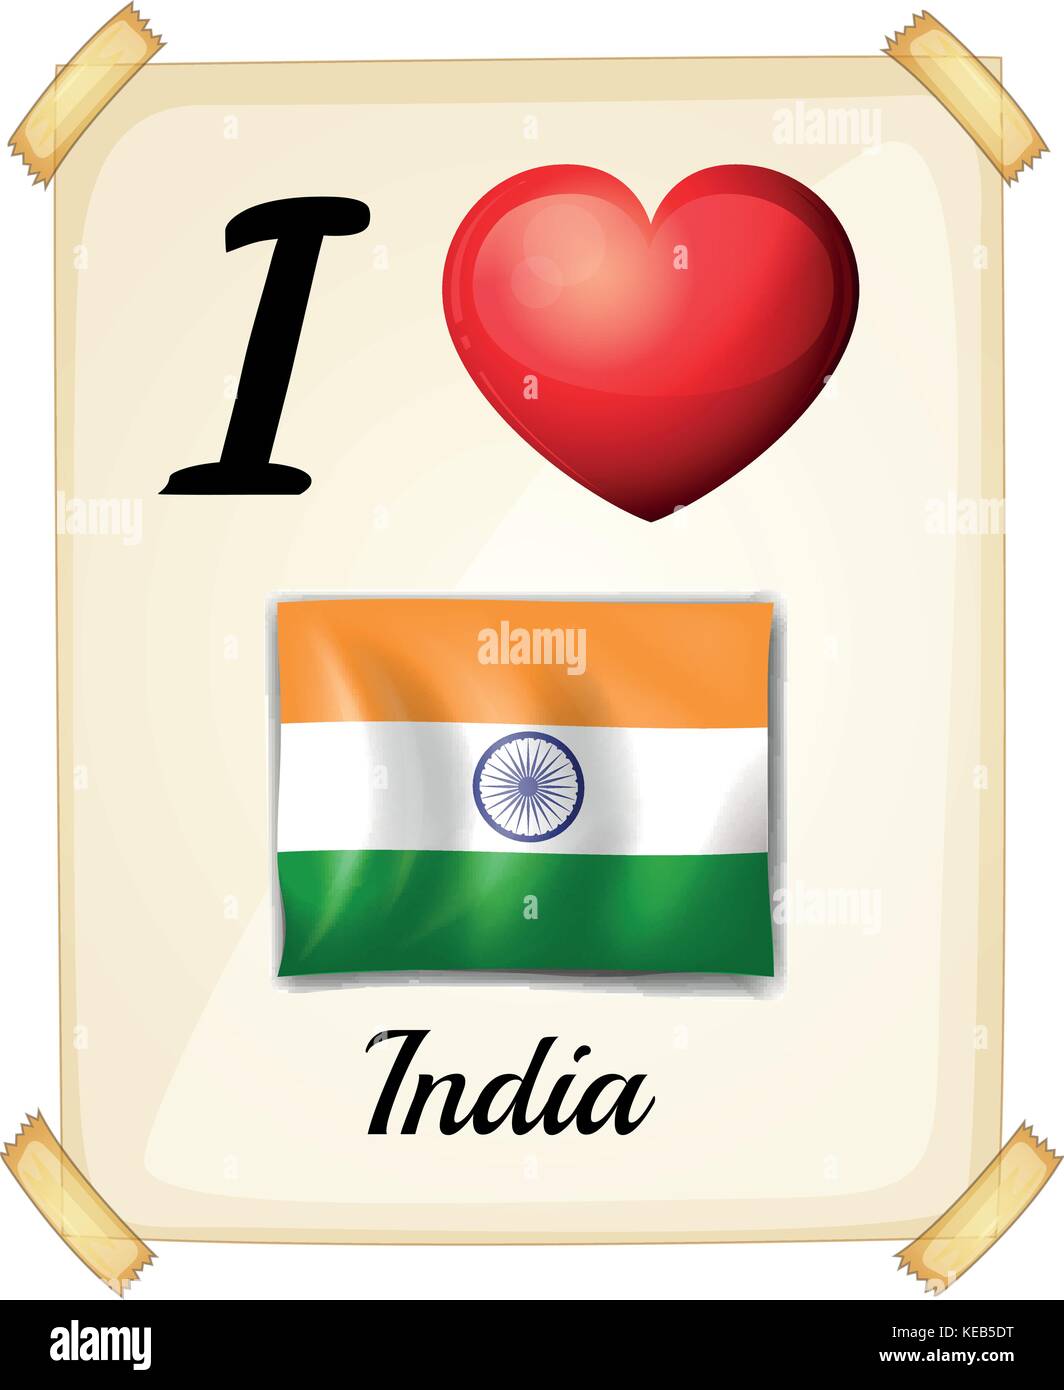 India i love you